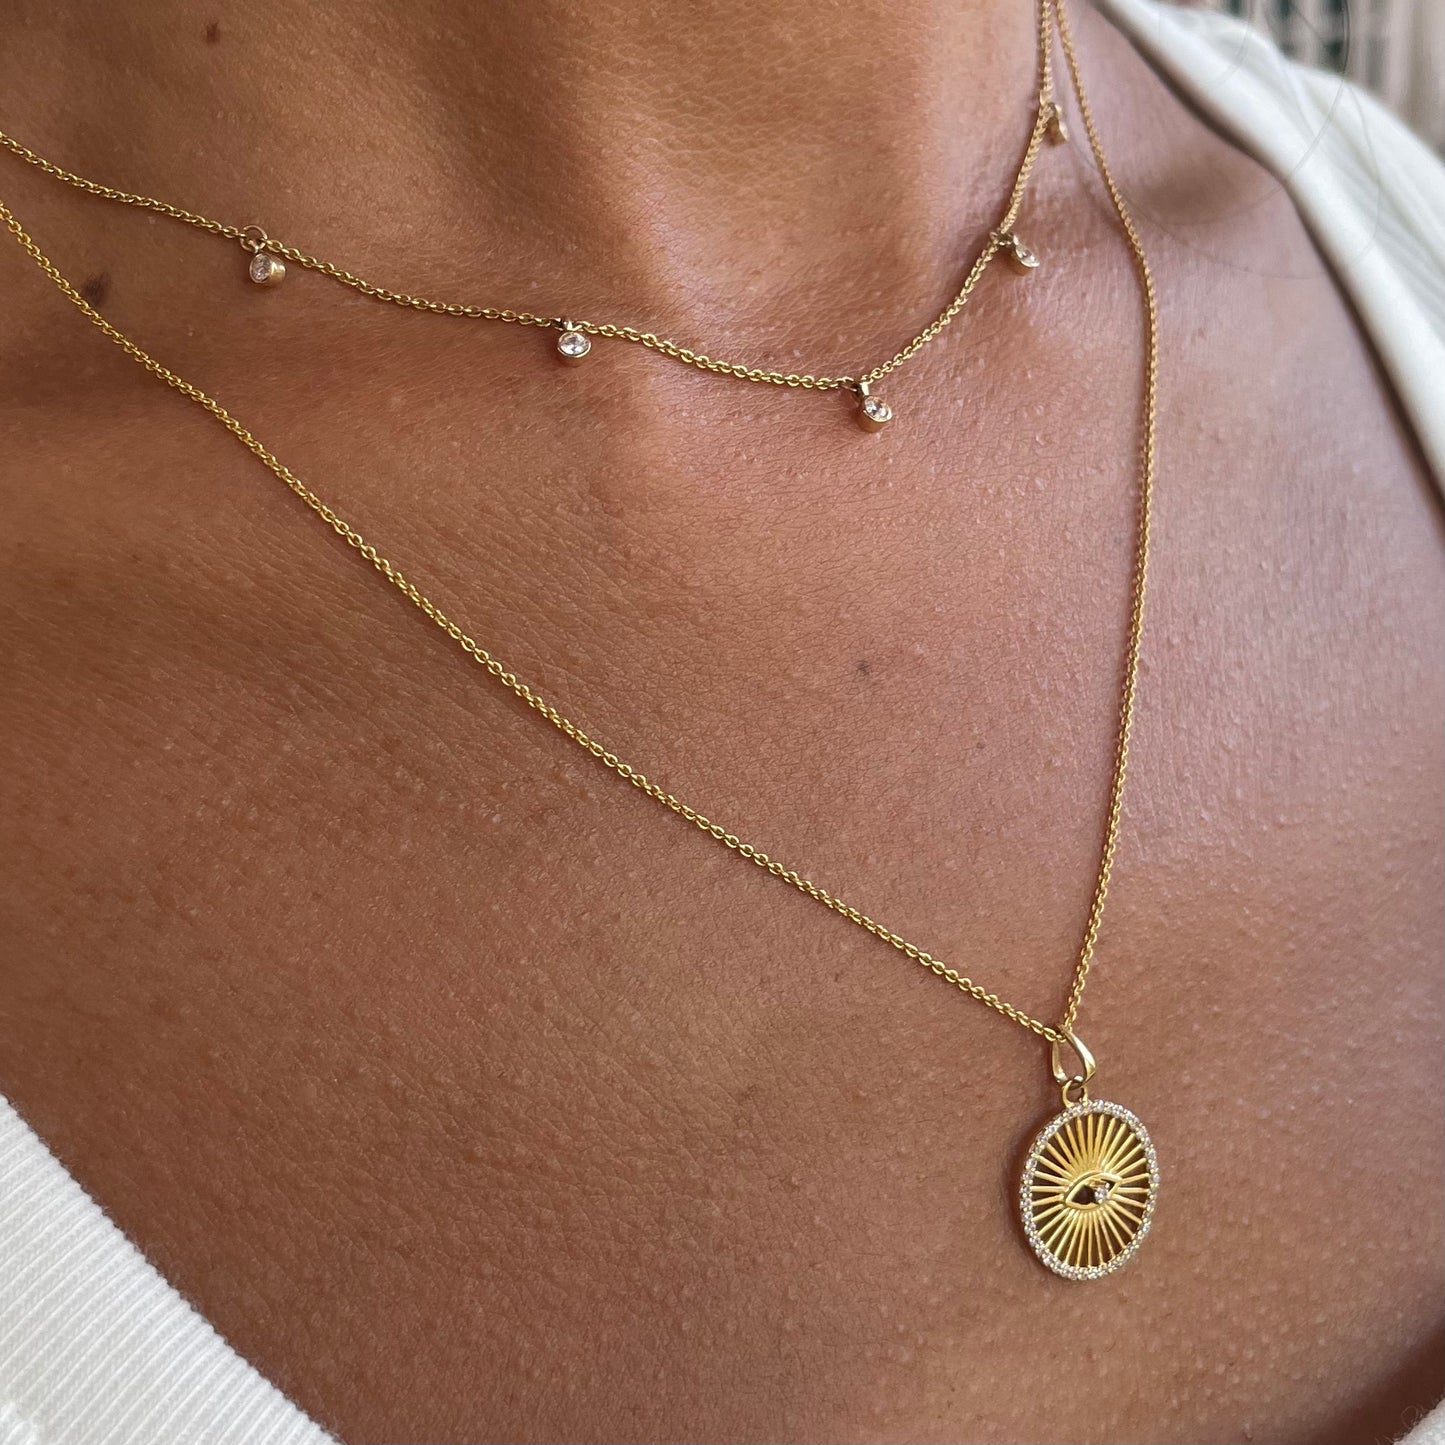 5 Floating Diamonds Necklace - - Jewelry - Goldie Paris Jewelry - Bezel Necklace